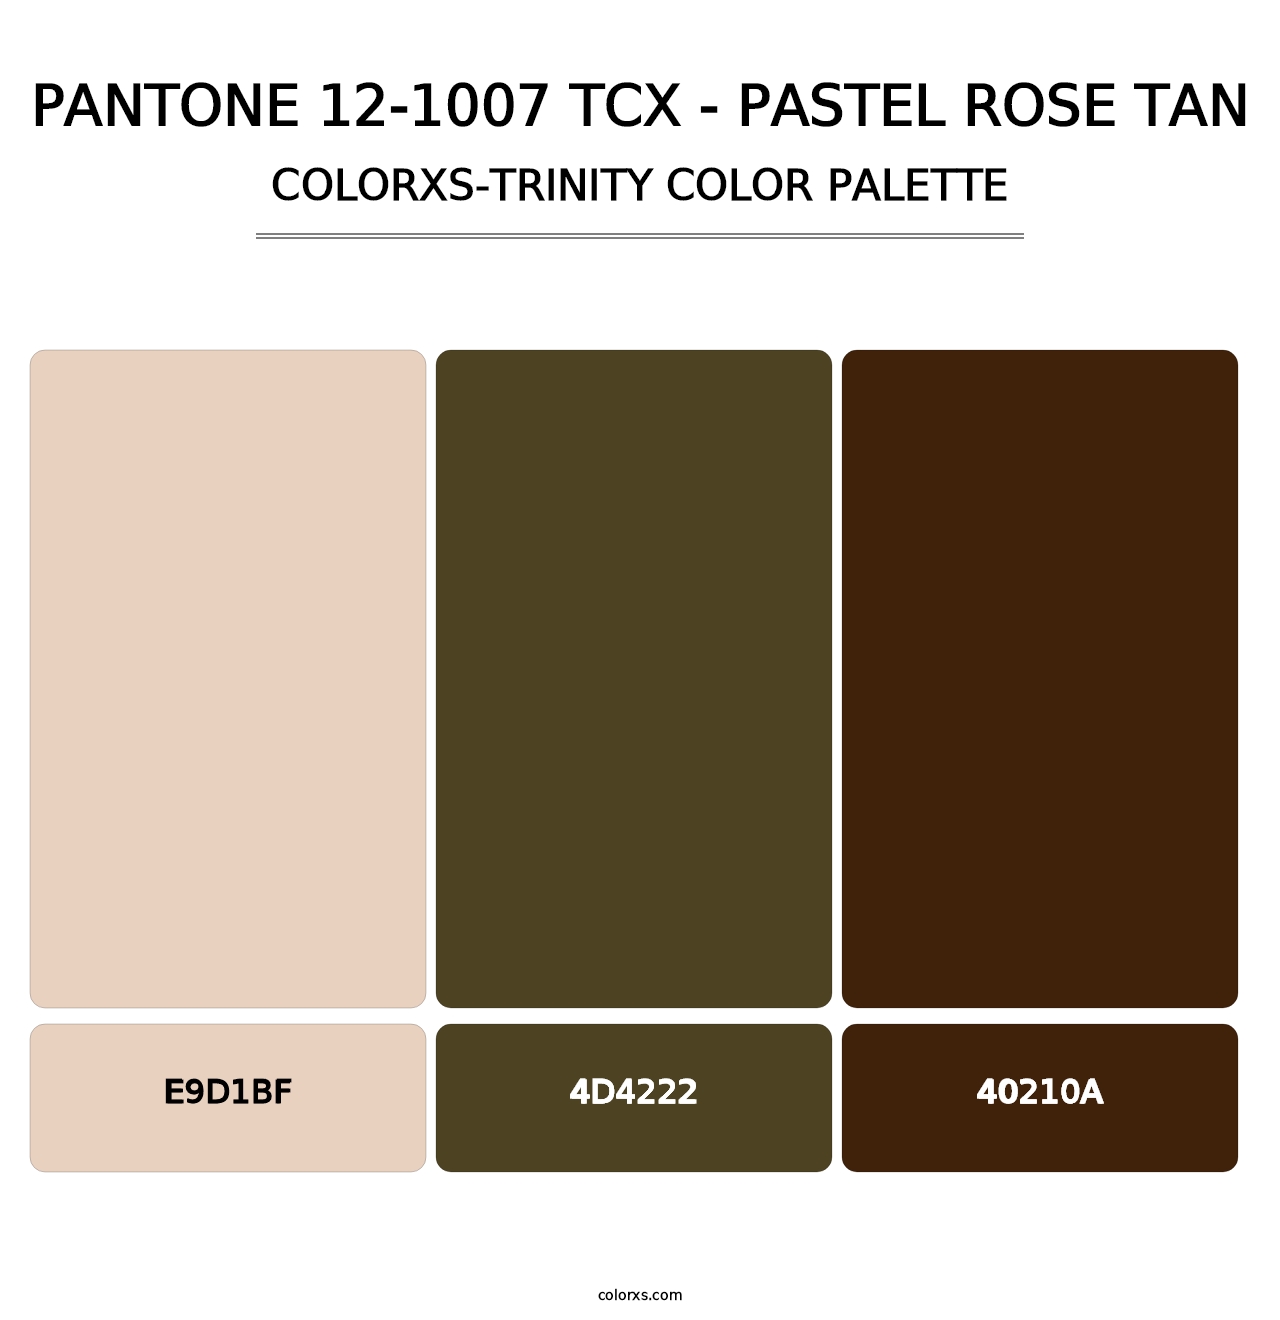 PANTONE 12-1007 TCX - Pastel Rose Tan - Colorxs Trinity Palette